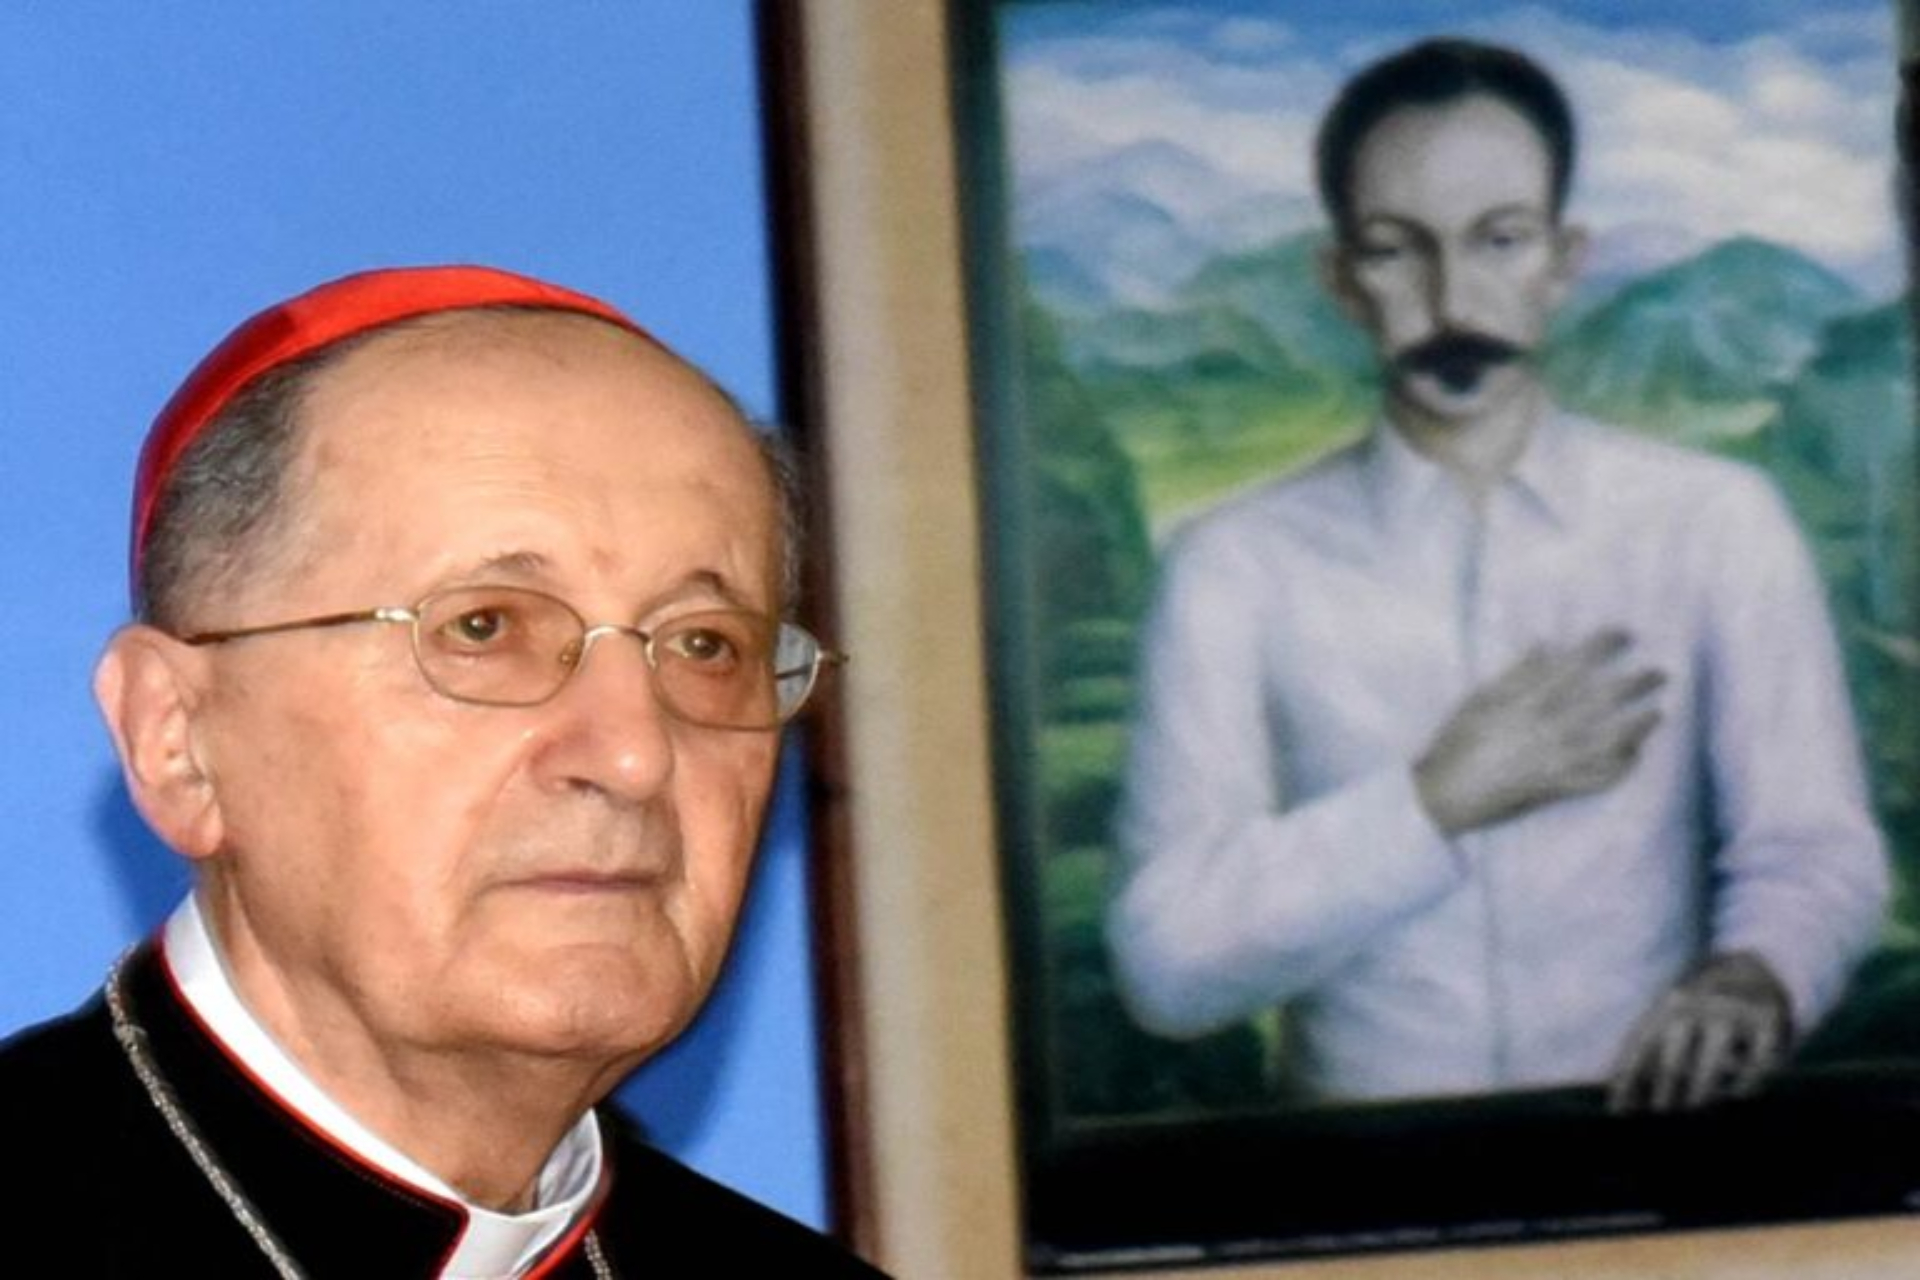 Cardenal Beniamino Stella en Cuba: un mensaje en pro del pluralismo, la fraternidad y la libertad